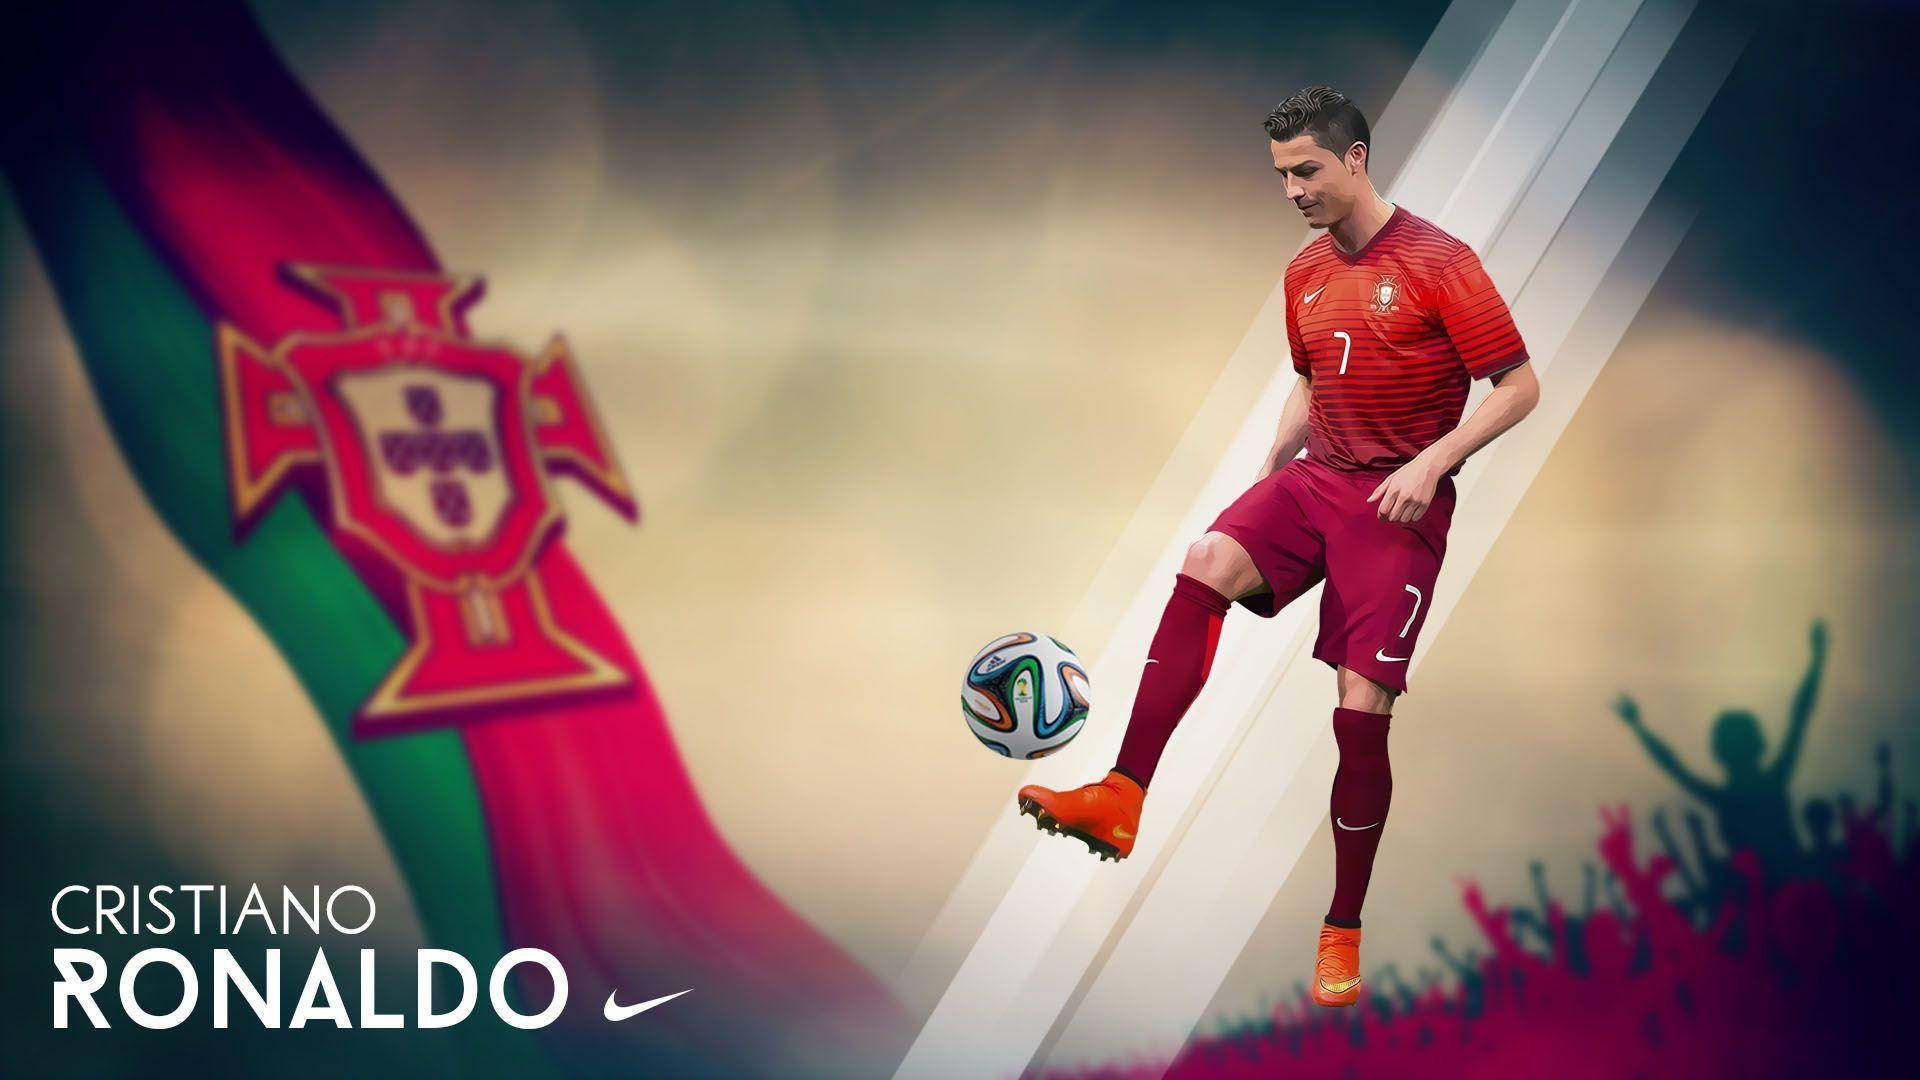 Download La Liga Cristiano Ronaldo